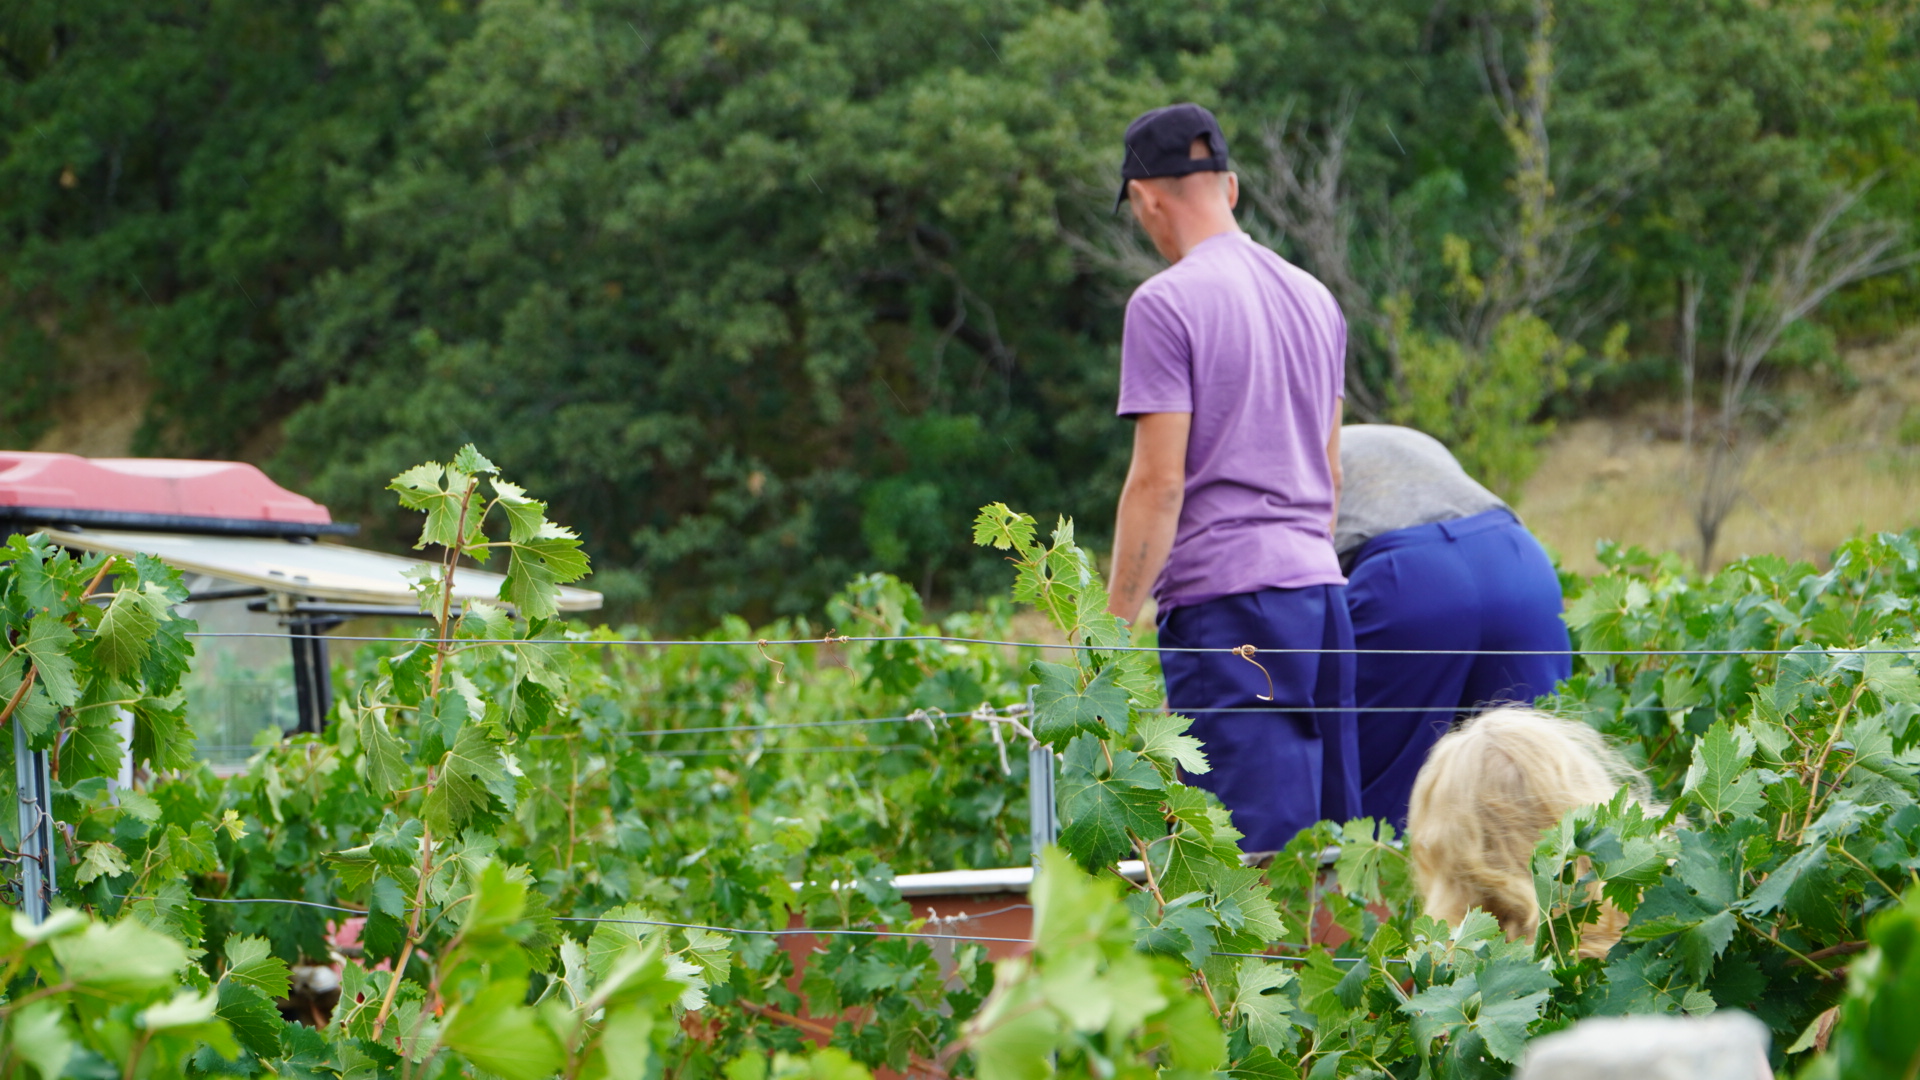 Около тысячи тонн винограда соберут в этом году в Солнечной Долине под Судаком